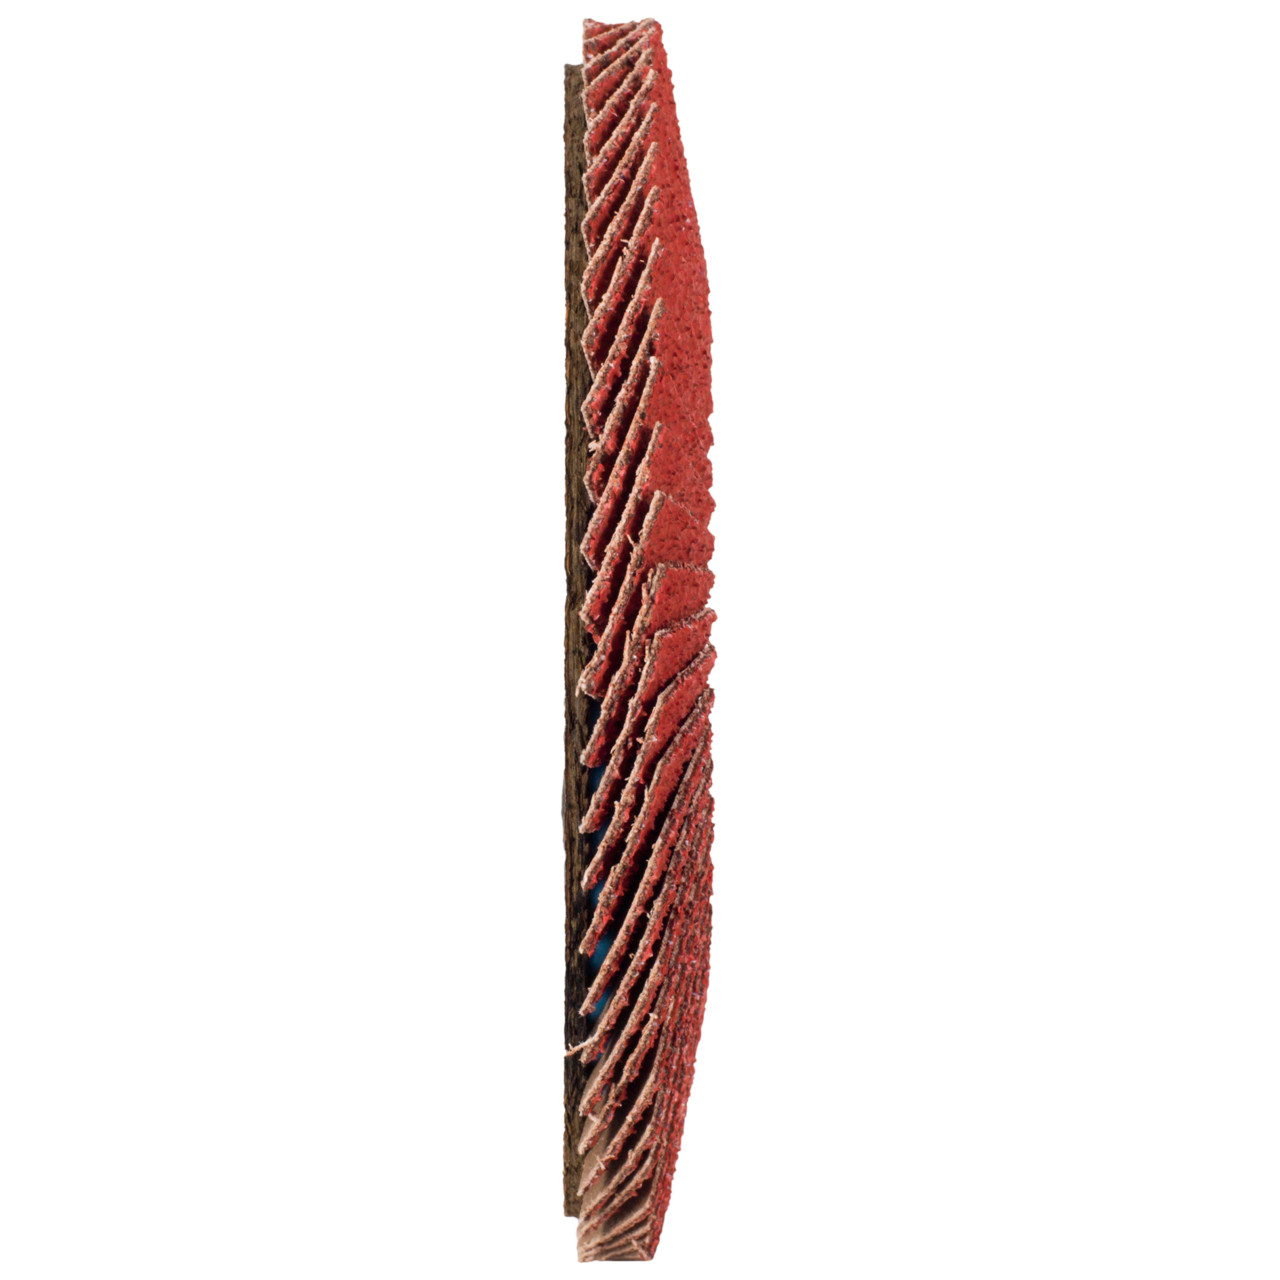 Tyrolit Gekartelde borgring DxH 115x22,23 CERABOND gekartelde borgring voor roestvrij staal, P40, vorm: 28A - rechte versie (glasvezeldragerhuisversie), Art. 34166172